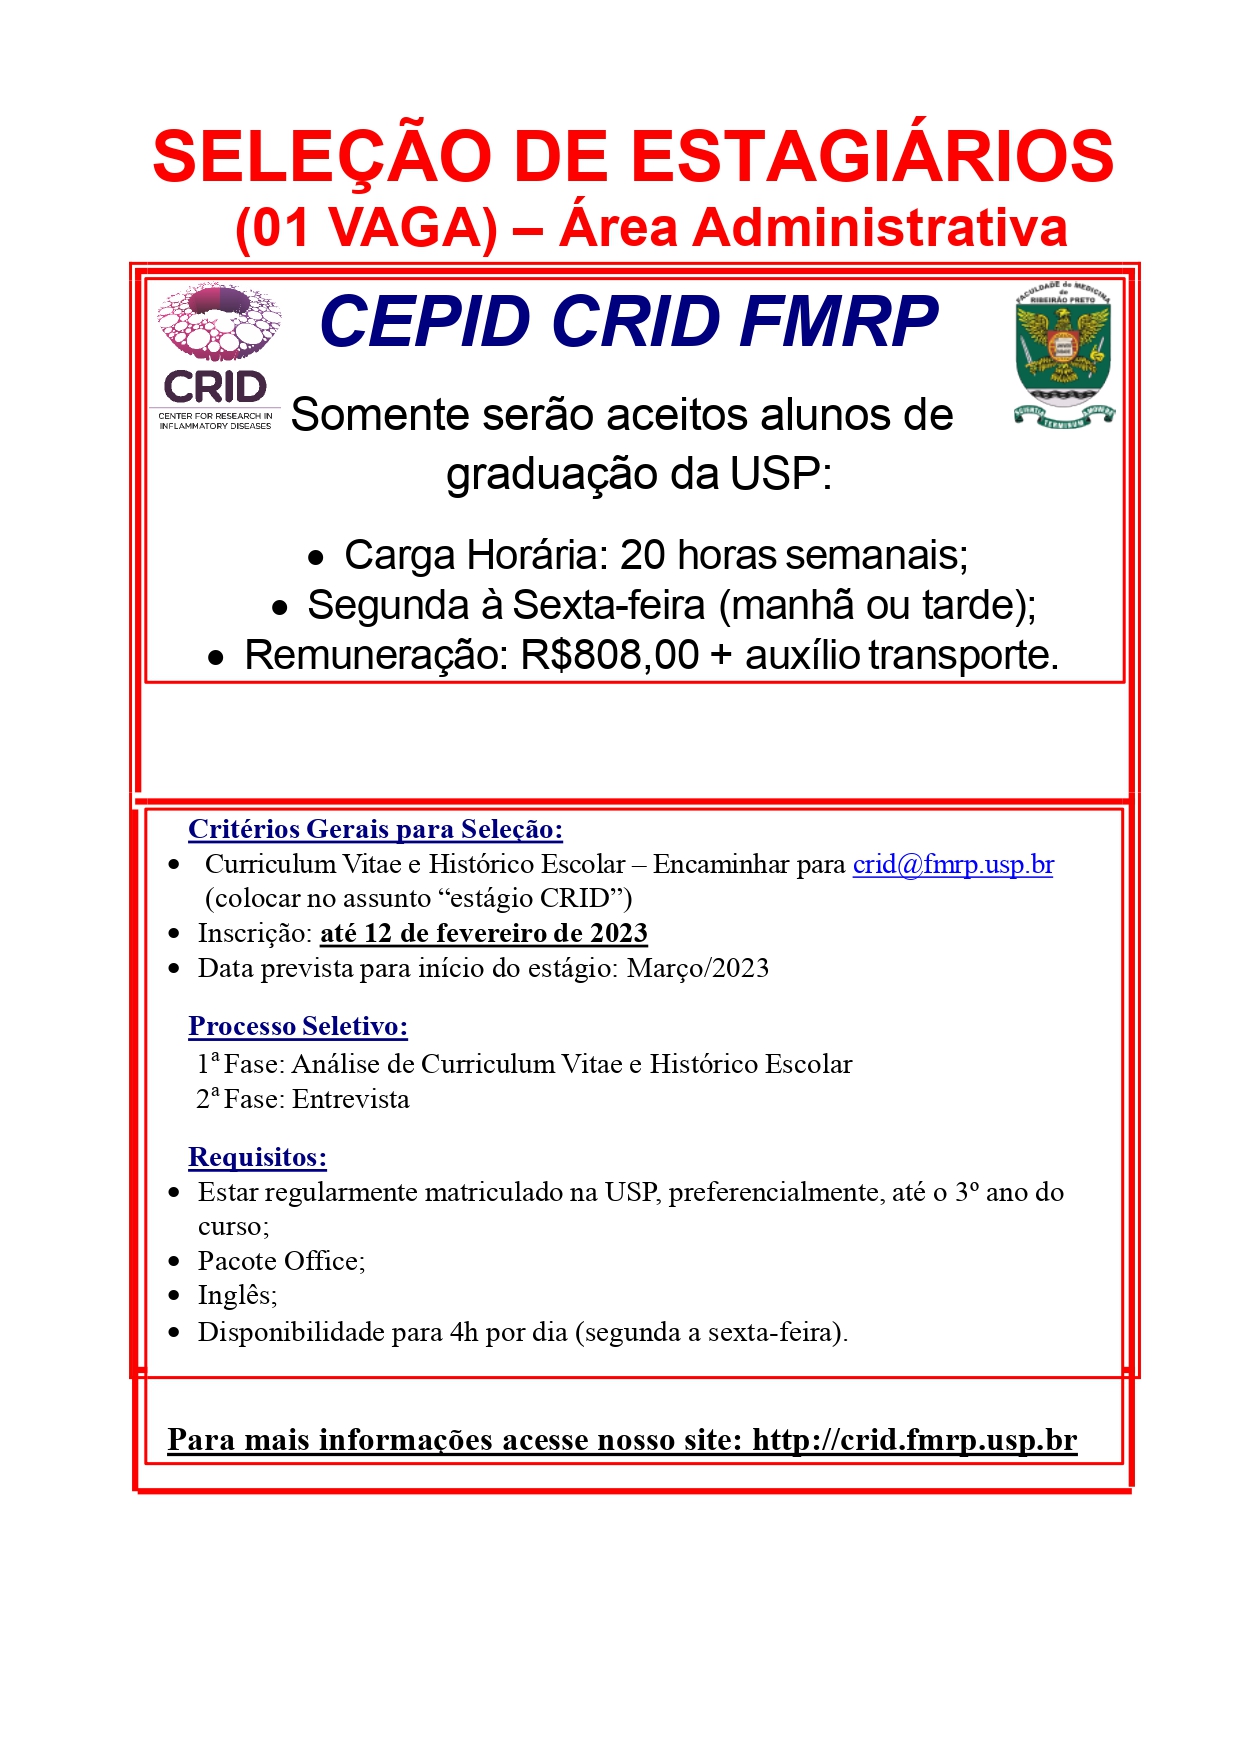 1_vagas_estágio_CEPID-CRID_-_FMRP-USP_2021_page-0001.jpg